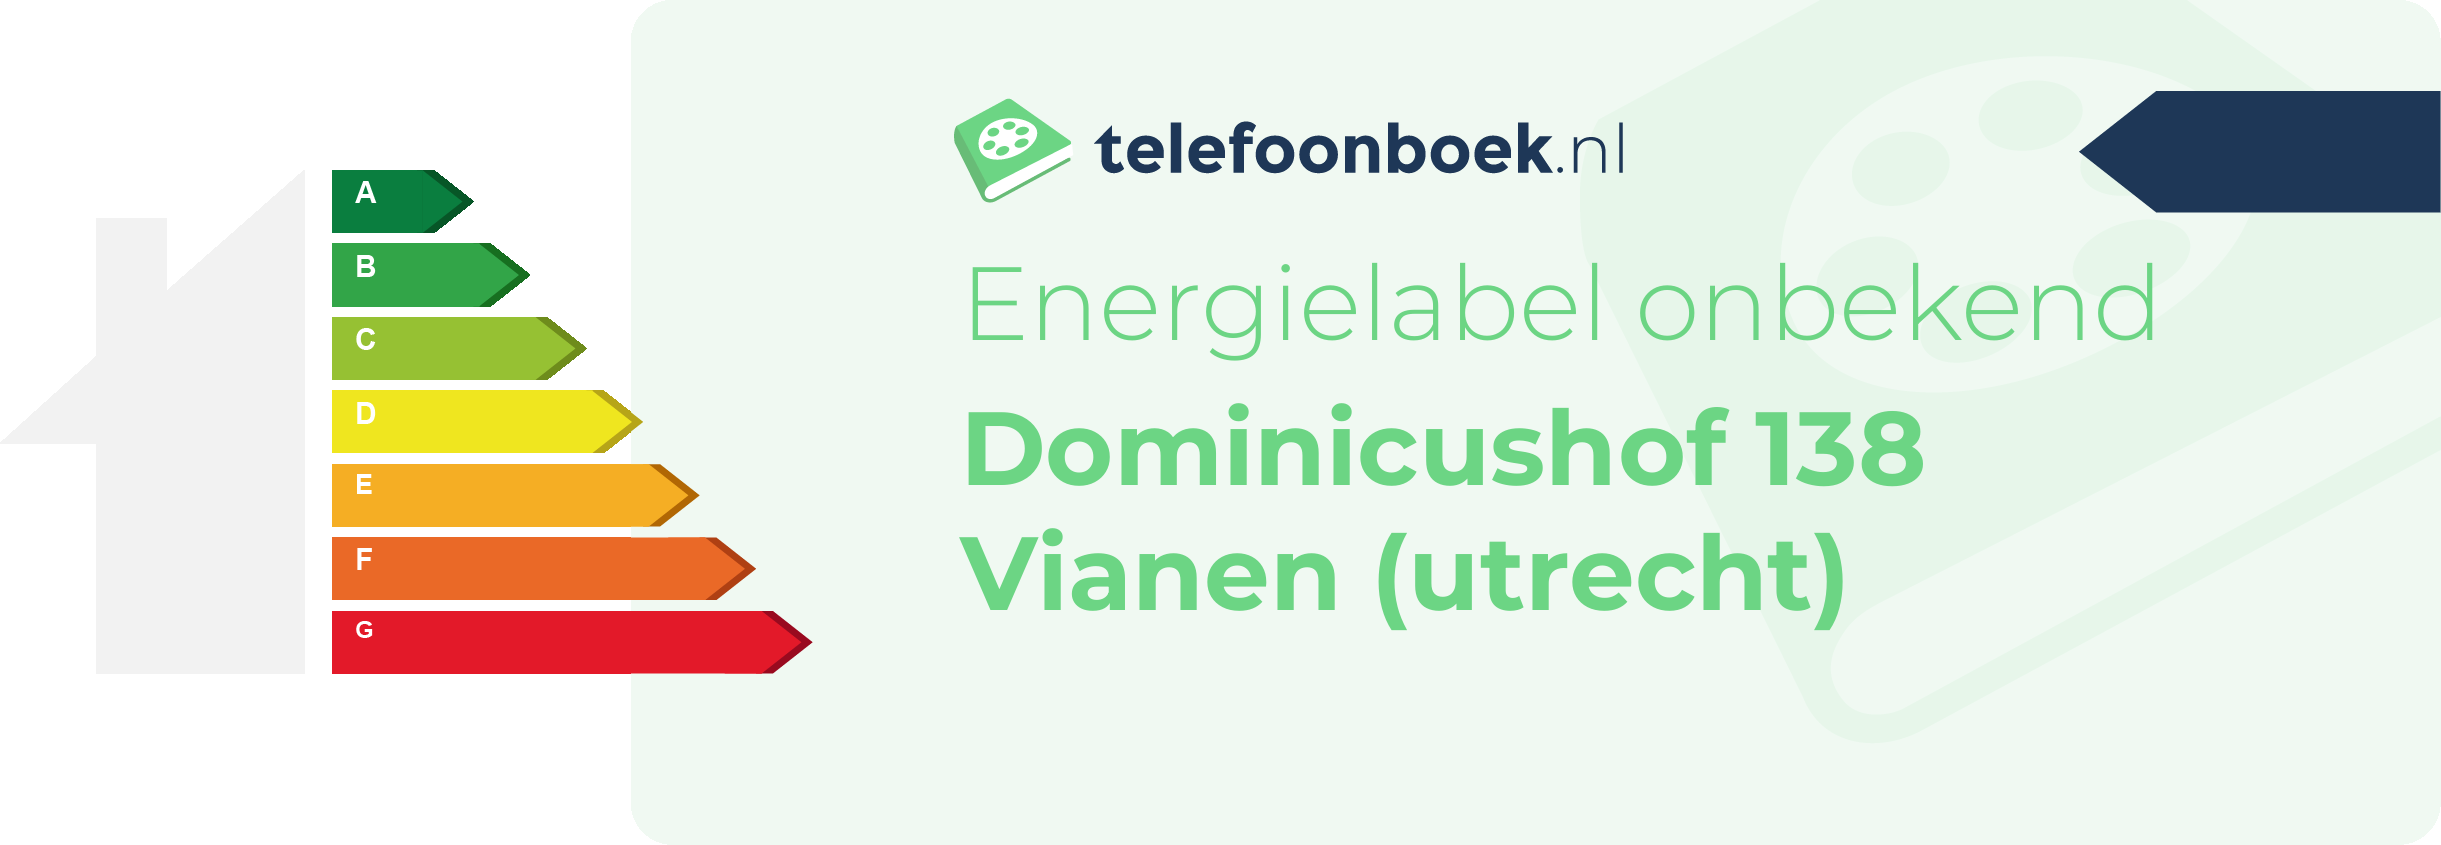 Energielabel Dominicushof 138 Vianen (Utrecht)